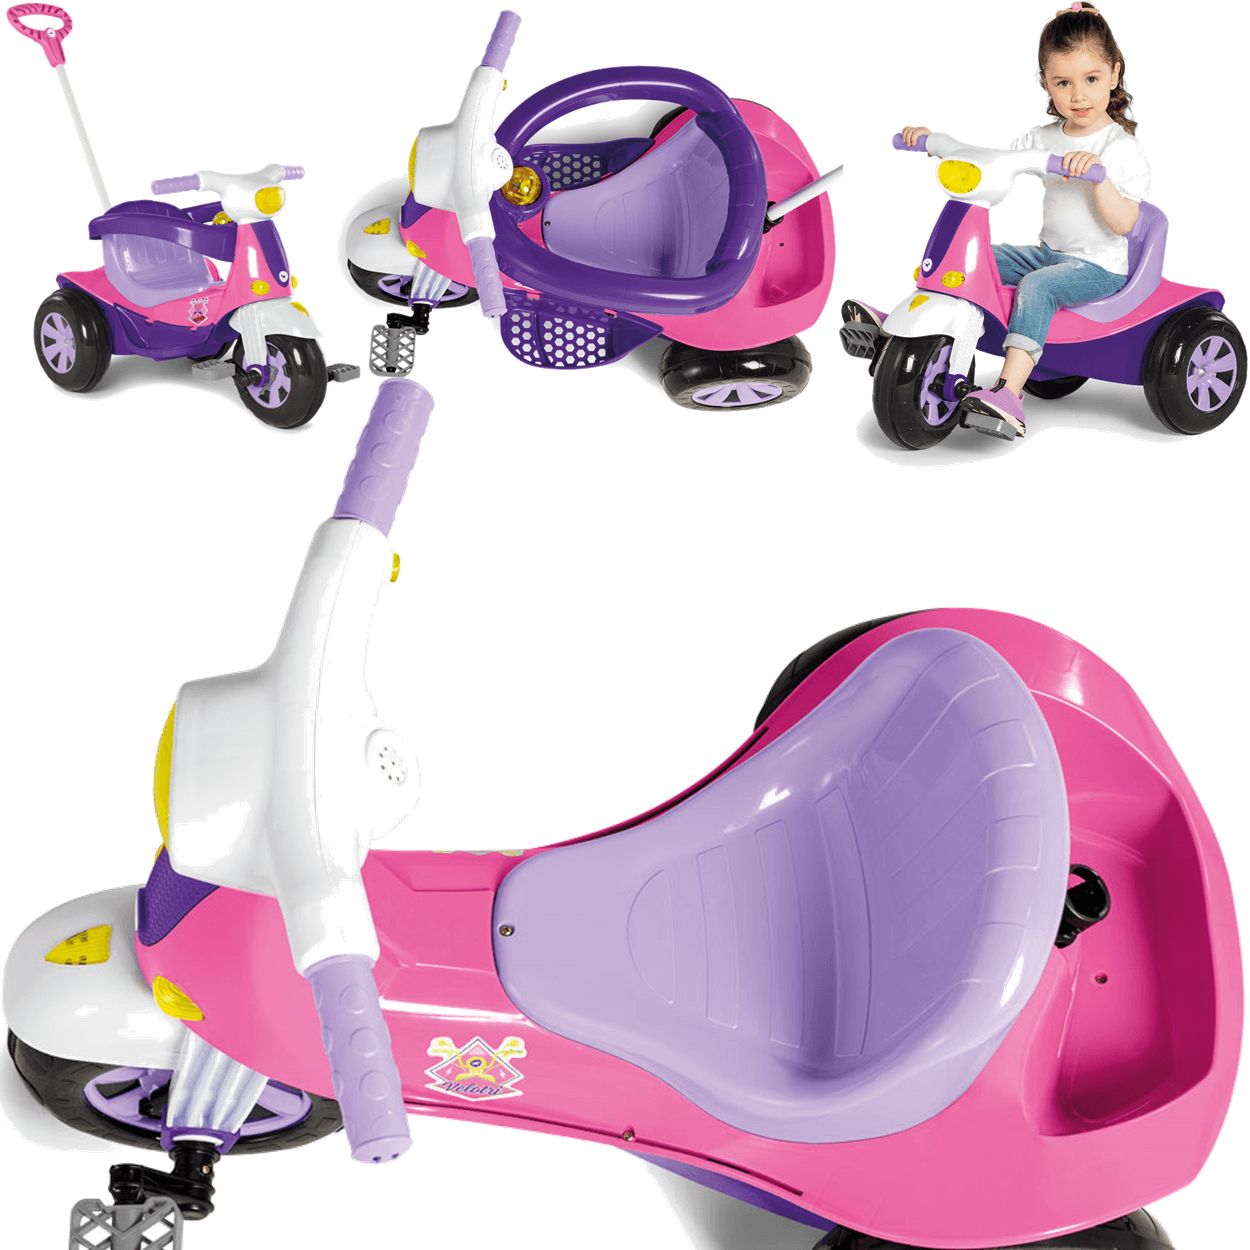 Triciclo Infantil Bandeirante Smart Comfort 3 em 1 Pedal e Passeio Aro -  Maçã Verde Baby